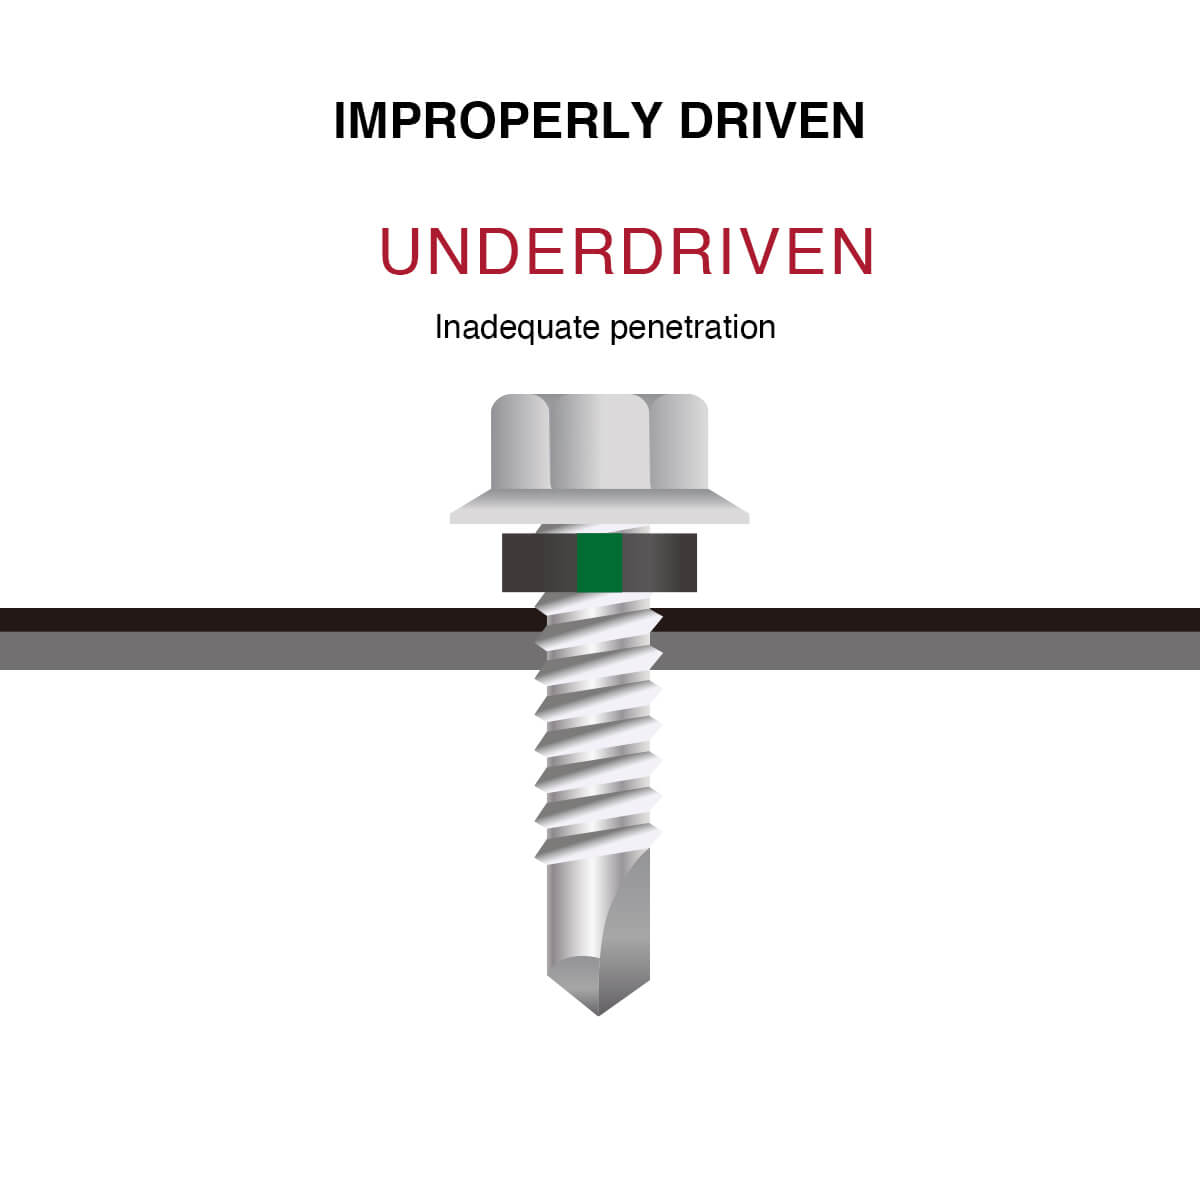 Under-driven screws